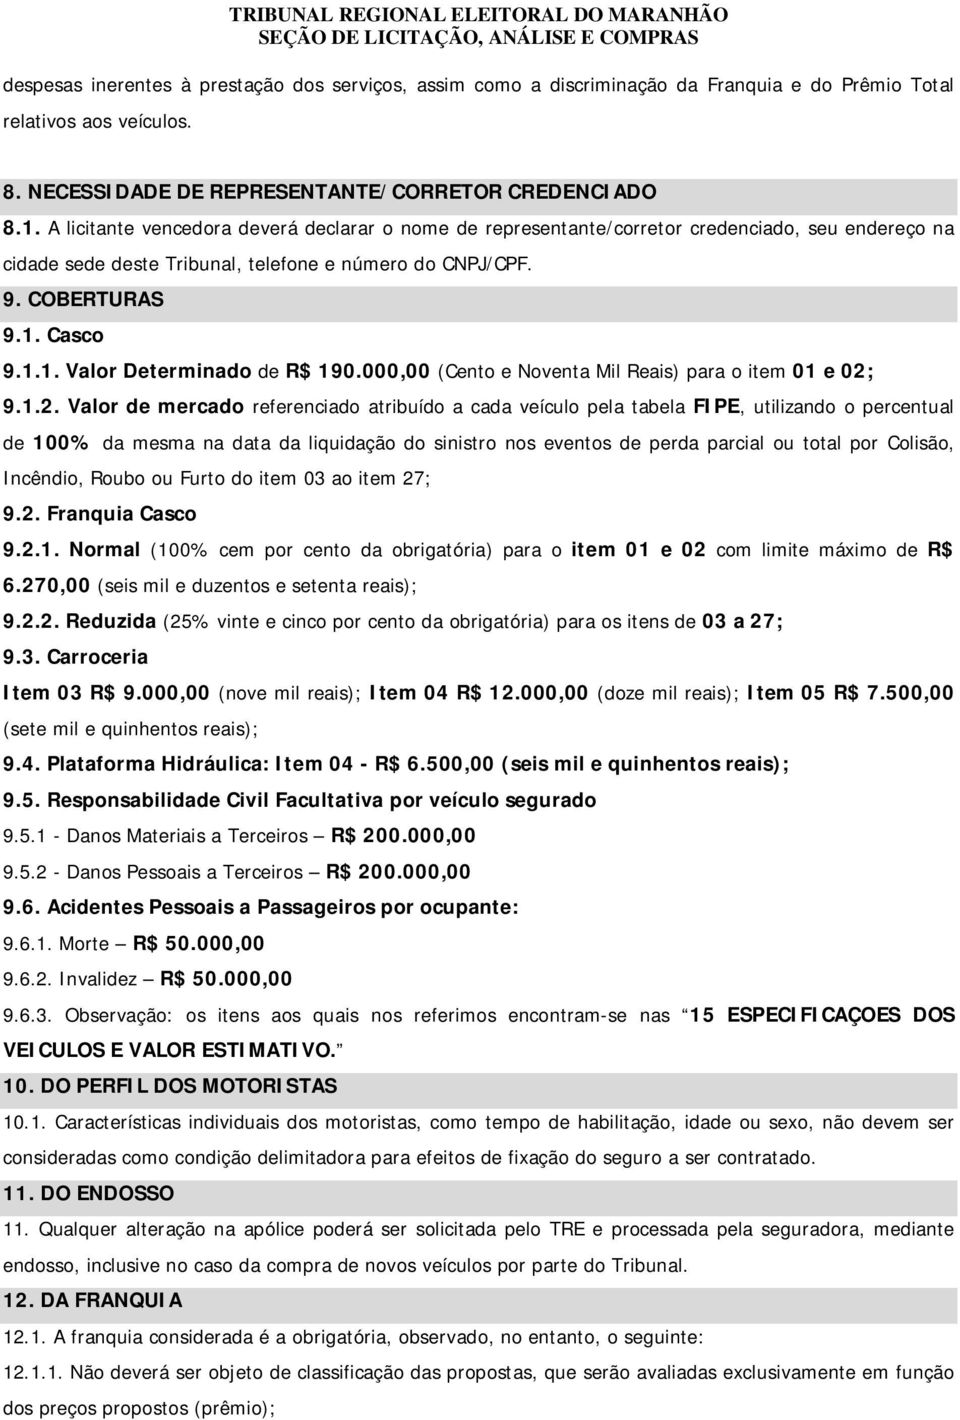 Casco 9.1.1. Valor Determinado de R$ 190.000,00 (Cento e Noventa Mil Reais) para o item 01 e 02;